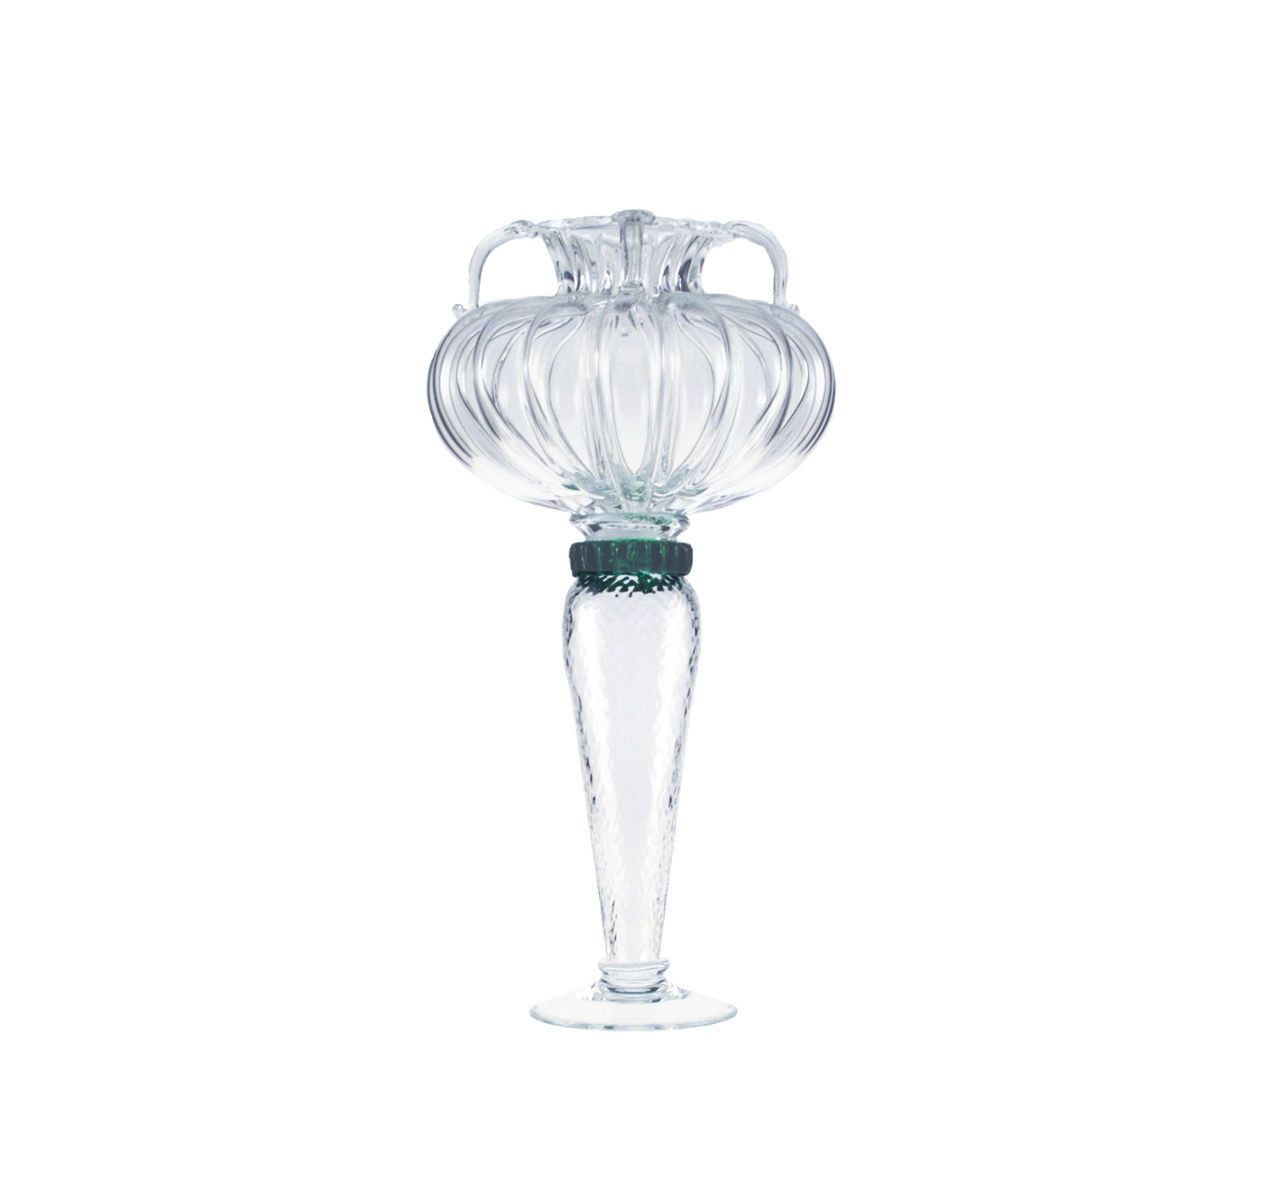 Driade Hera Glass Vase Borek Sipek | Panik Design